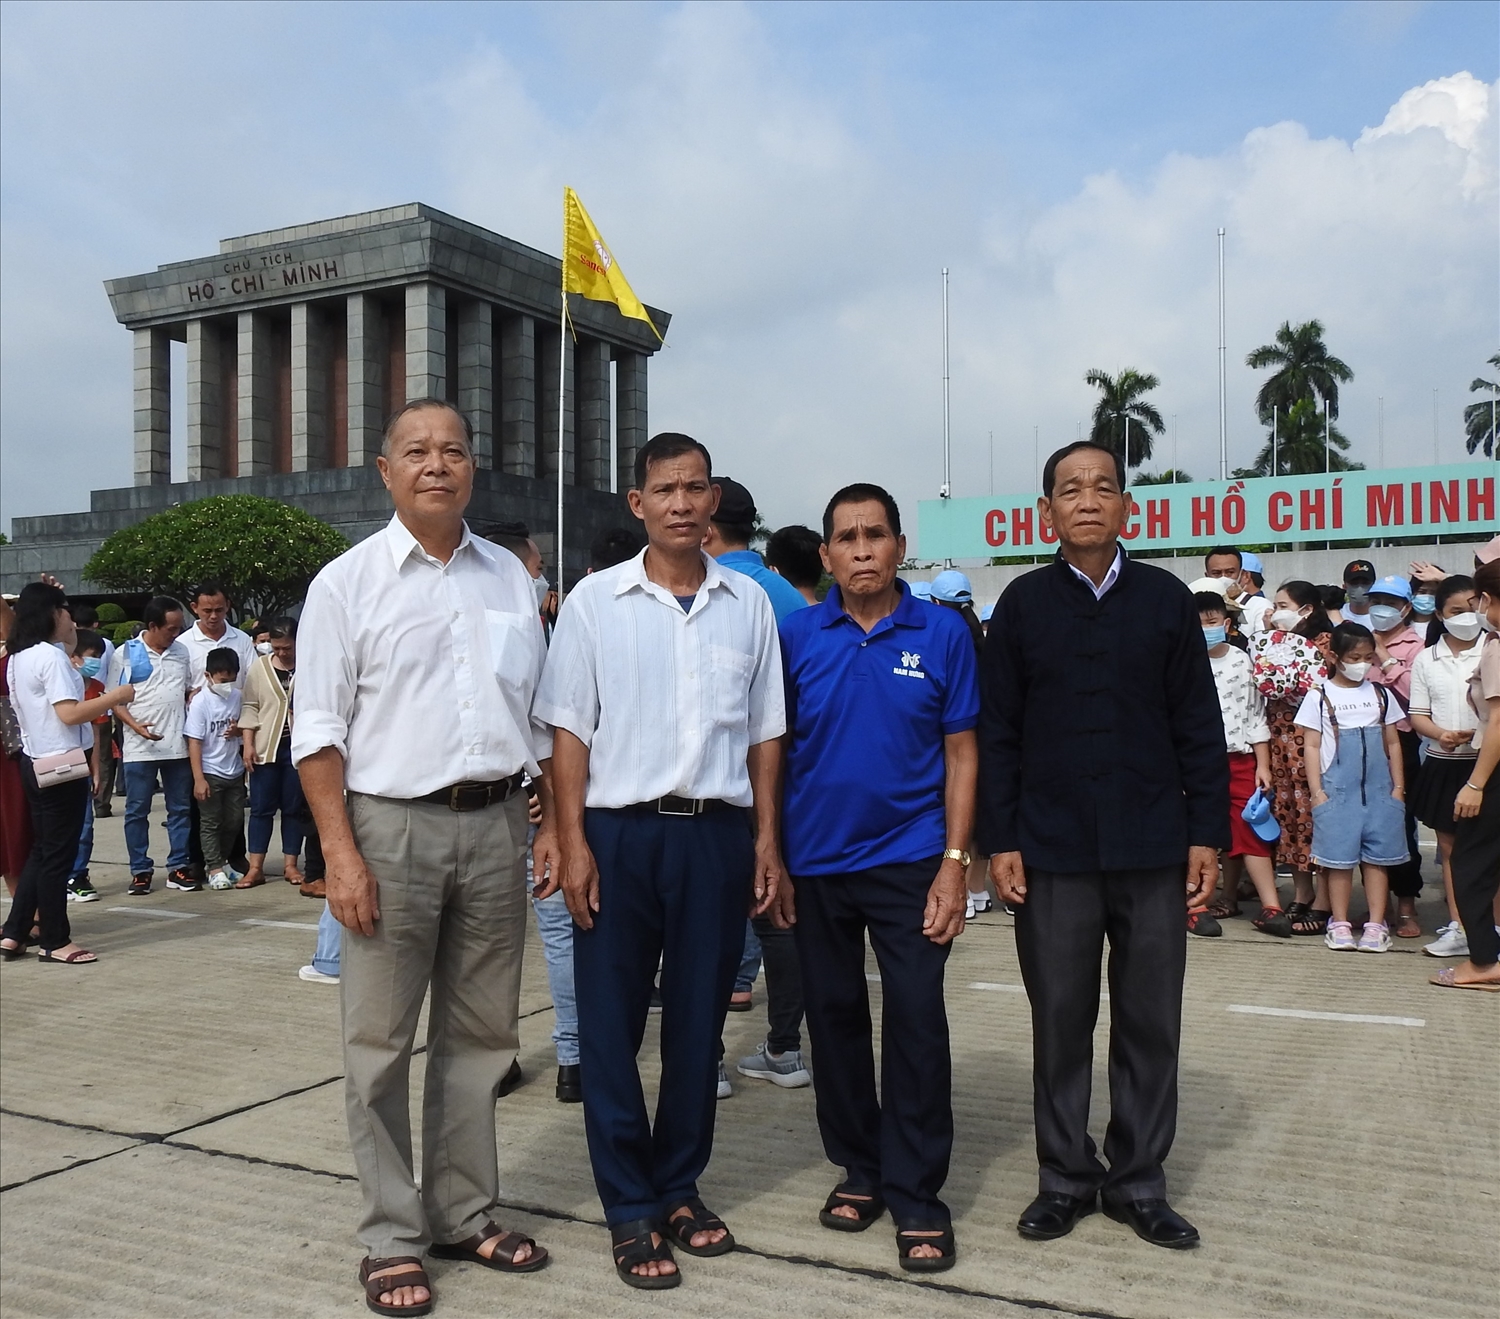 Người có uy tín Điêu Văn Khang (ngoài cùng bên trái) vinh dự được đại diện cho gần 1000 Người có uy tín tỉnh Yên Bái đi thăm quan, học tập, gặp mặt Lãnh đạo ủy ban Dân tộc tại Hà Nội năm 2022